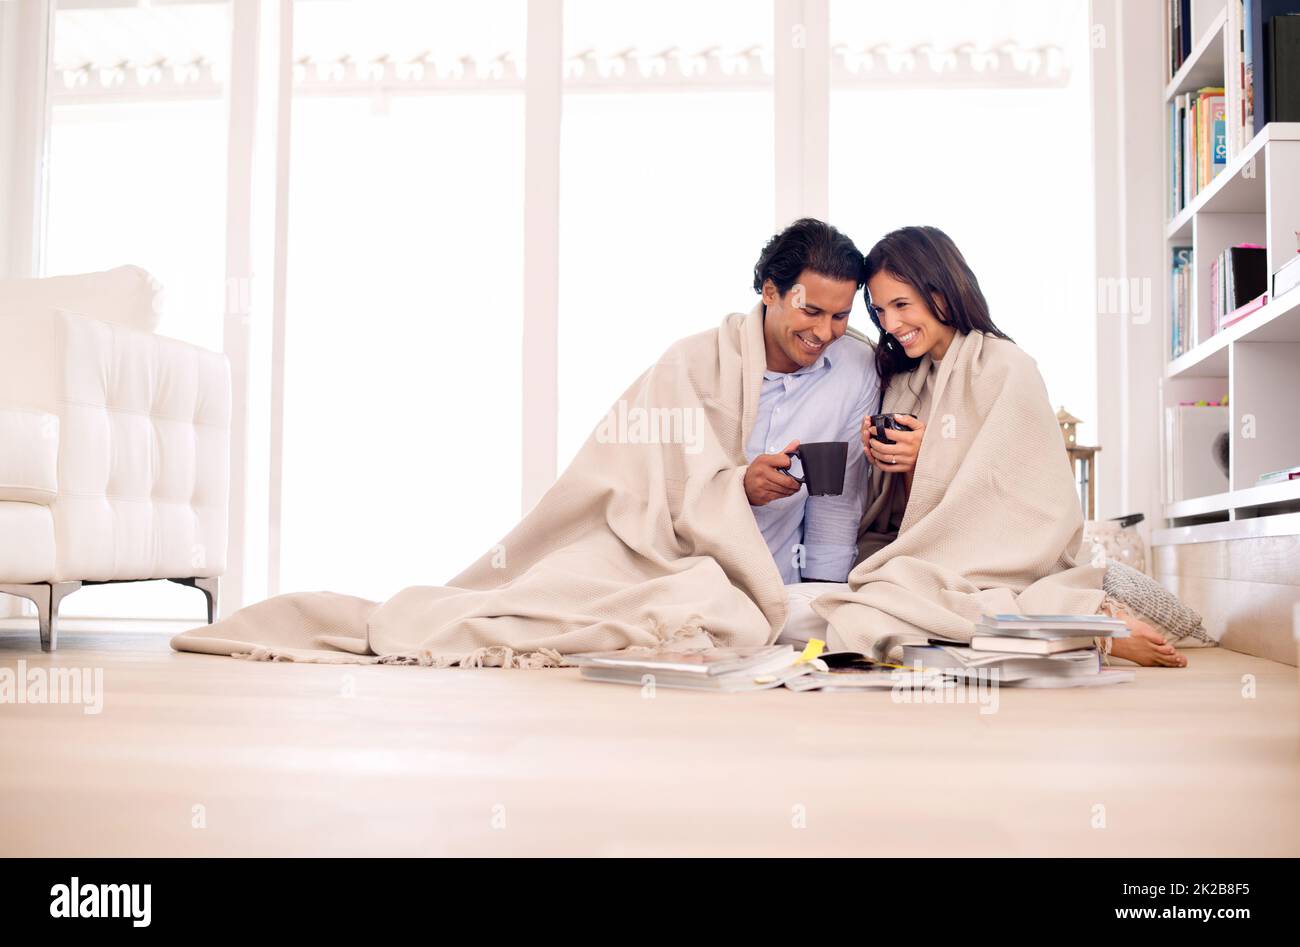 Das Beste aus ihrer Zeit zusammen zu machen. Aufnahme eines jungen Paares, das in eine Decke gehüllt auf dem Boden sitzt und Fotoalben ansieht. Stockfoto